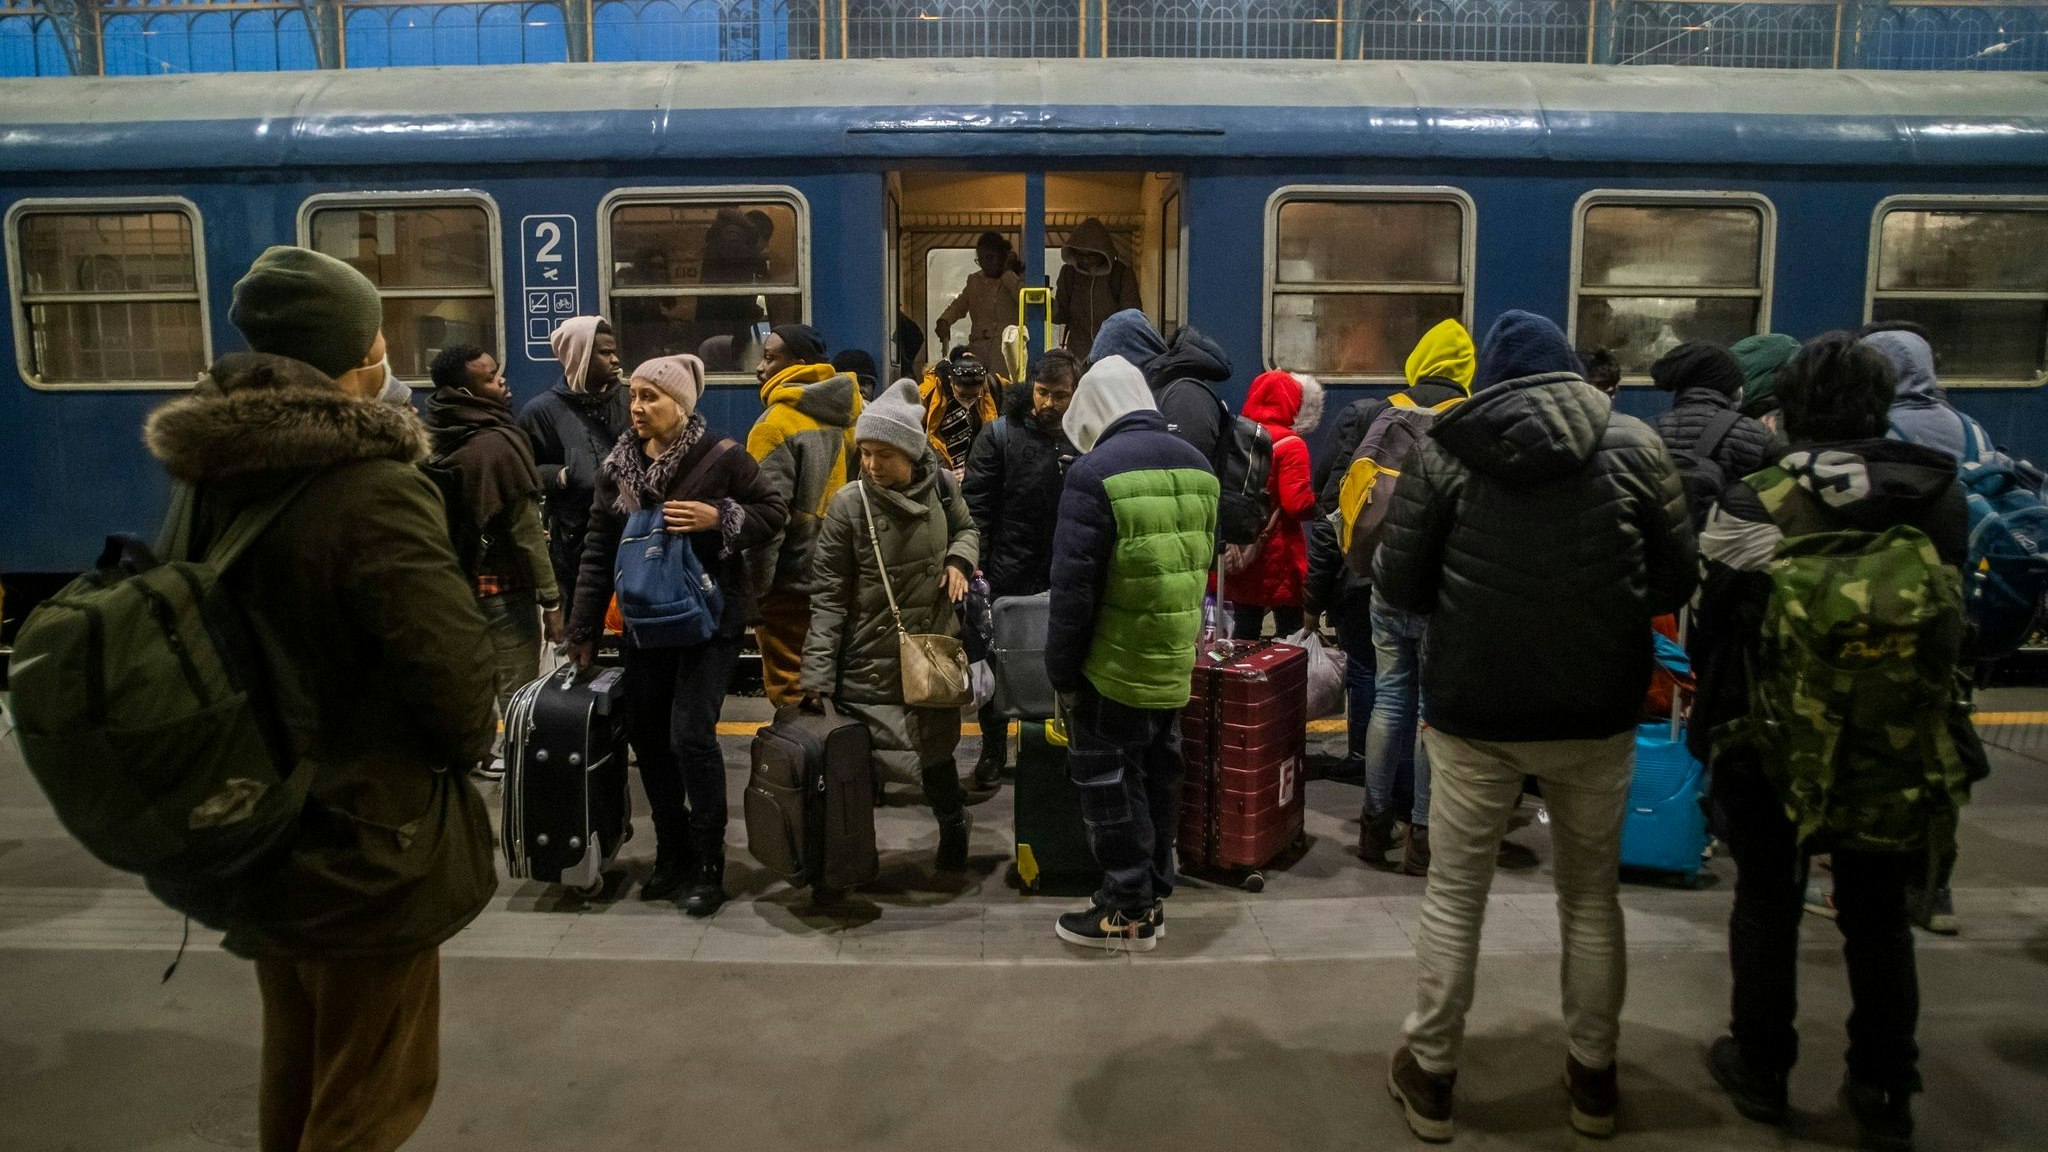 Flüchtlinge aus der Ukraine kommen in Budapest an. Innerhalb kürzester Zeit müssen wegen der russischen Aggression immer mehr Menschen aus der Ukraine fliehen. Foto: dpa/Balogh